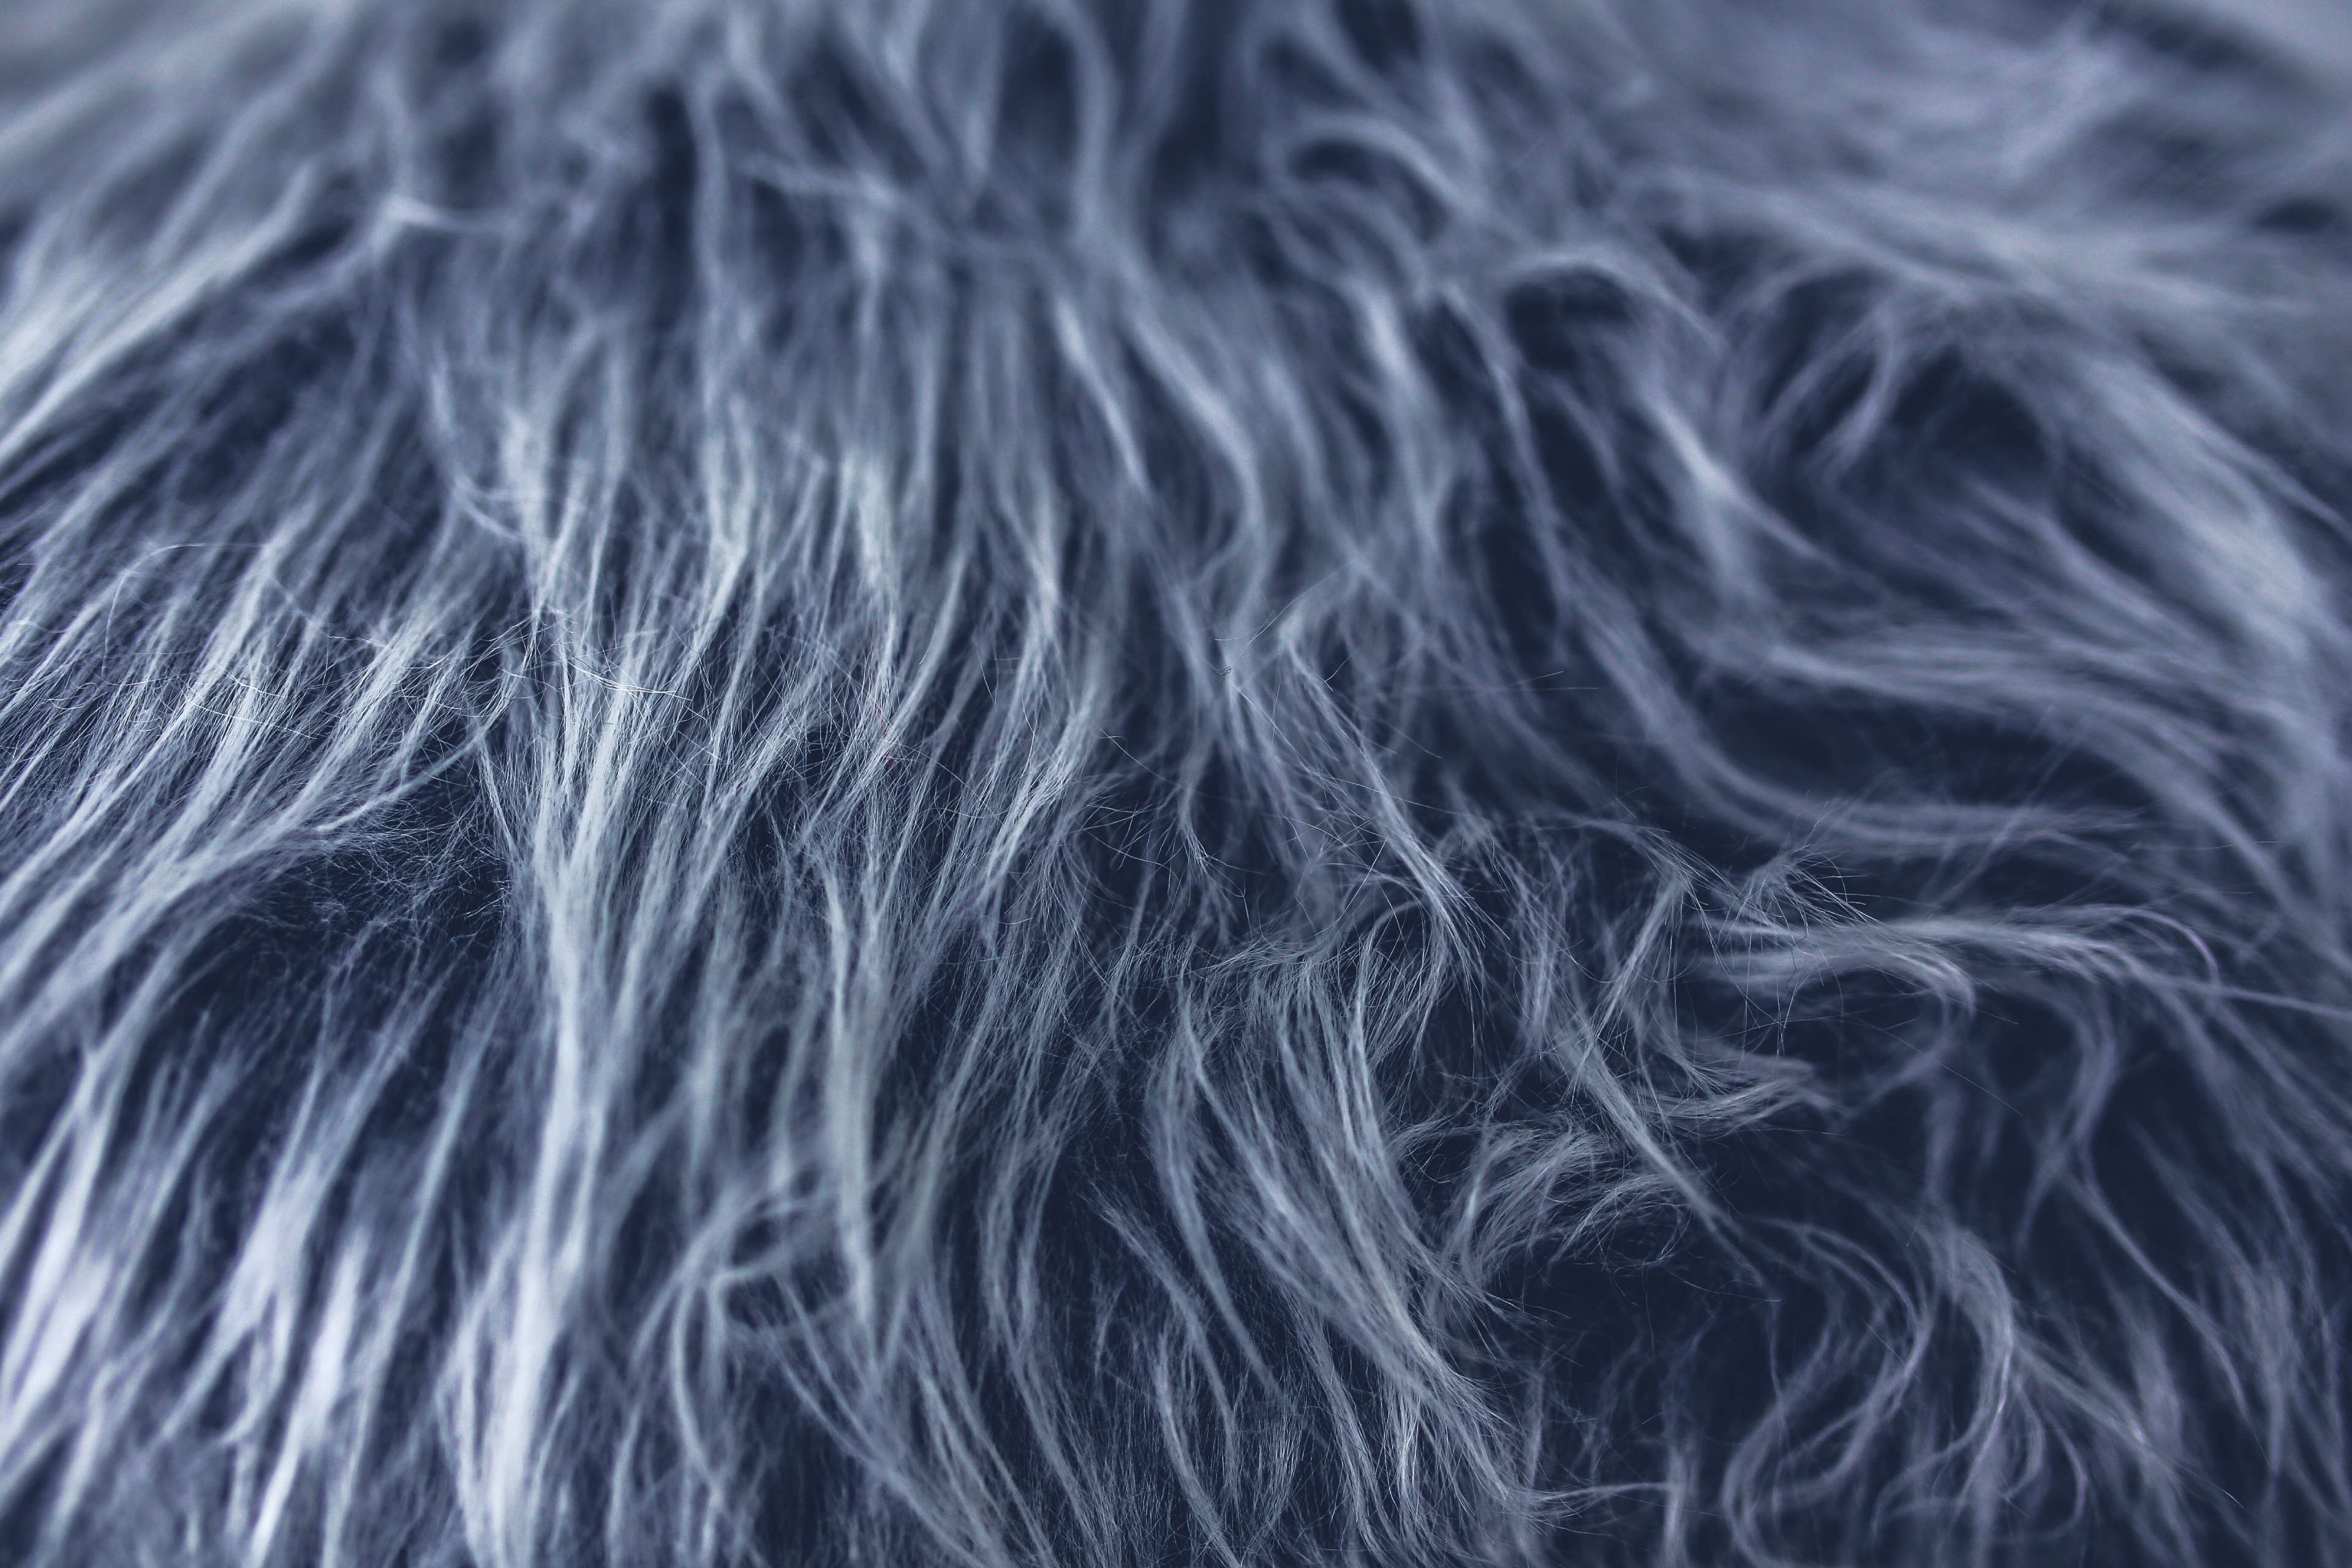 grey fur wallpaper,hair,fur,close up,textile,photography